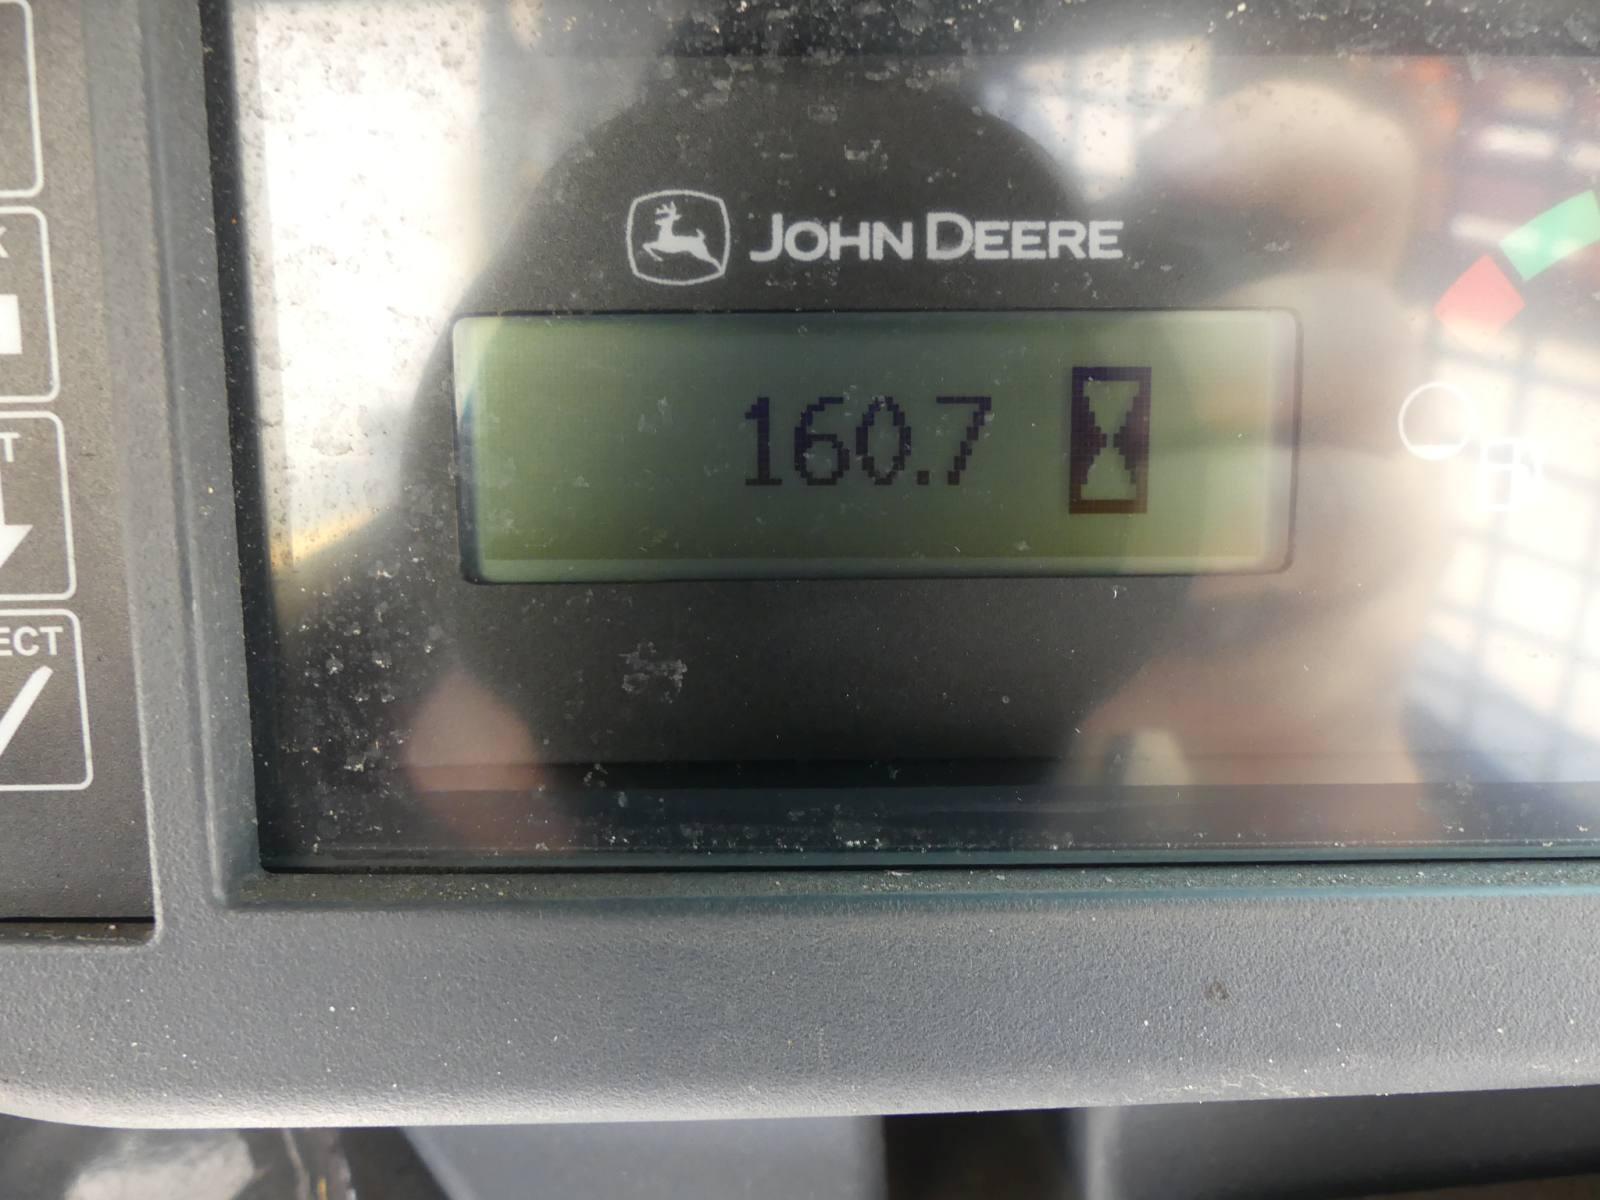 2021 John Deere 318G Skid Steer, s/n 1T0318GKTMJ408638: Canopy, Rubber Trac